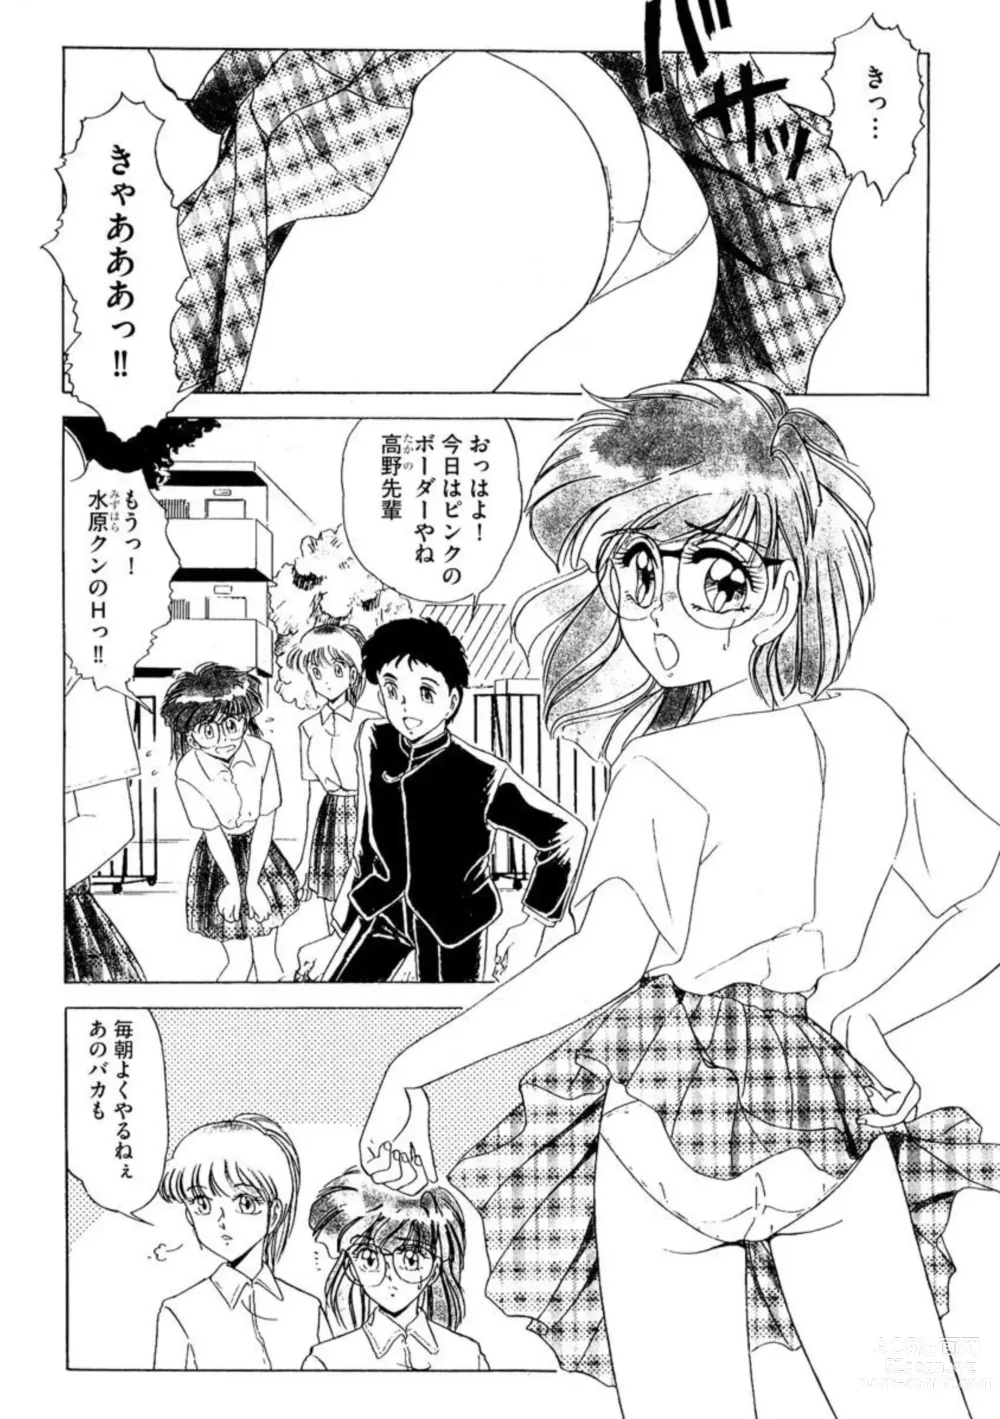 Page 3 of manga Ichiban Kimochi no ī o Furo 1